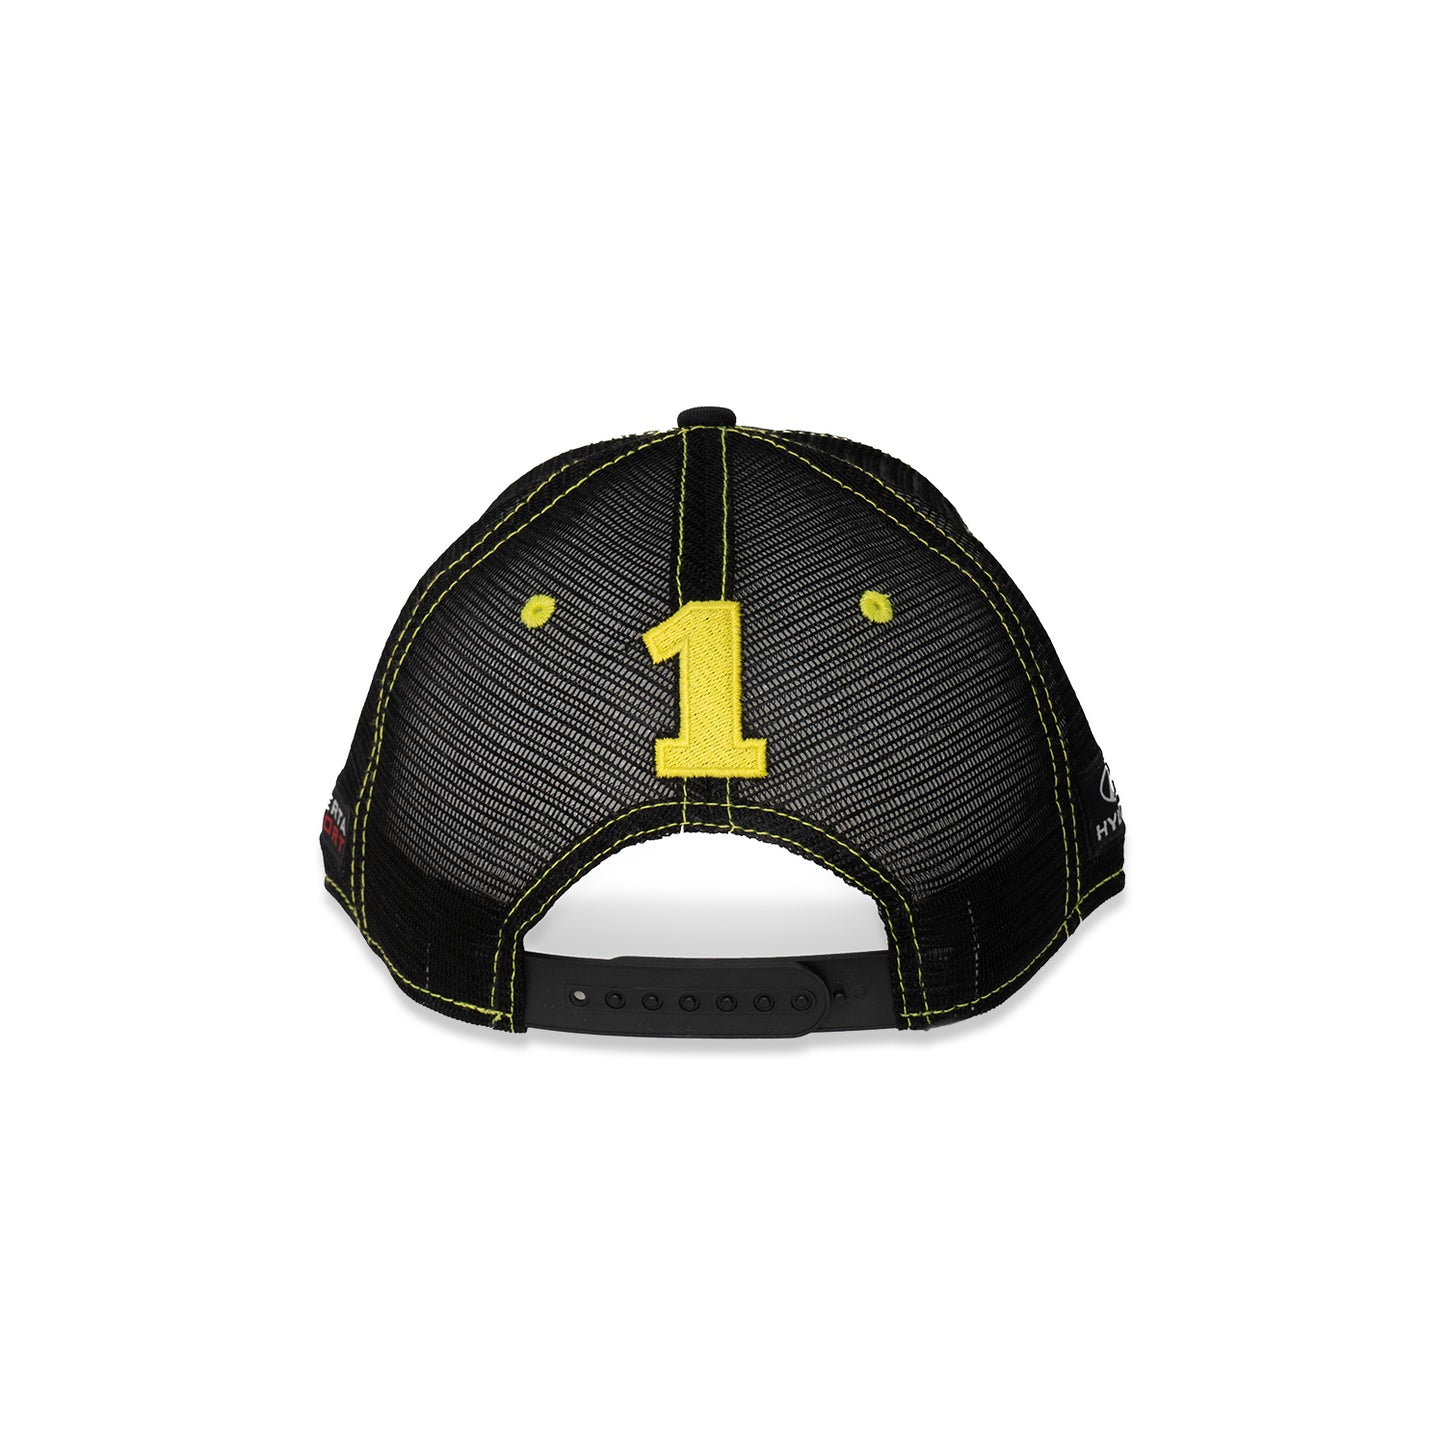 Taylor Hagler Motorsport Snapback Hat - Black